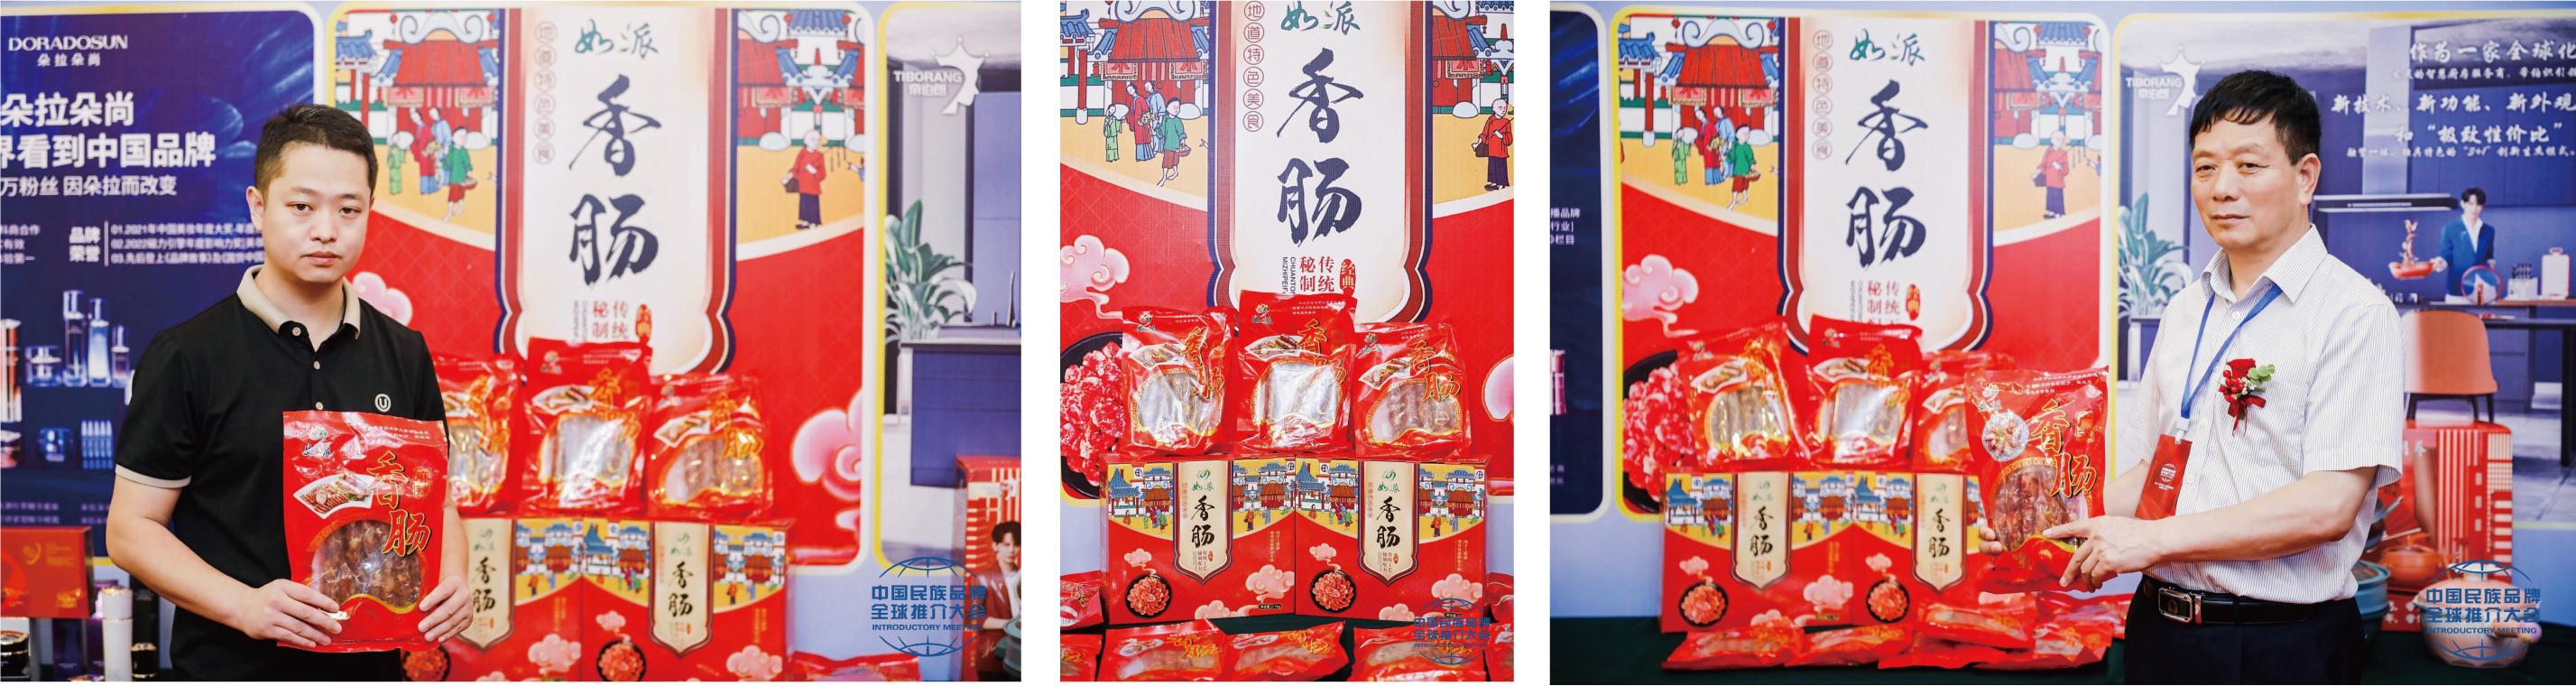 第十二届全国政协副主席刘晓峰巡视2023优秀民族品牌精品展